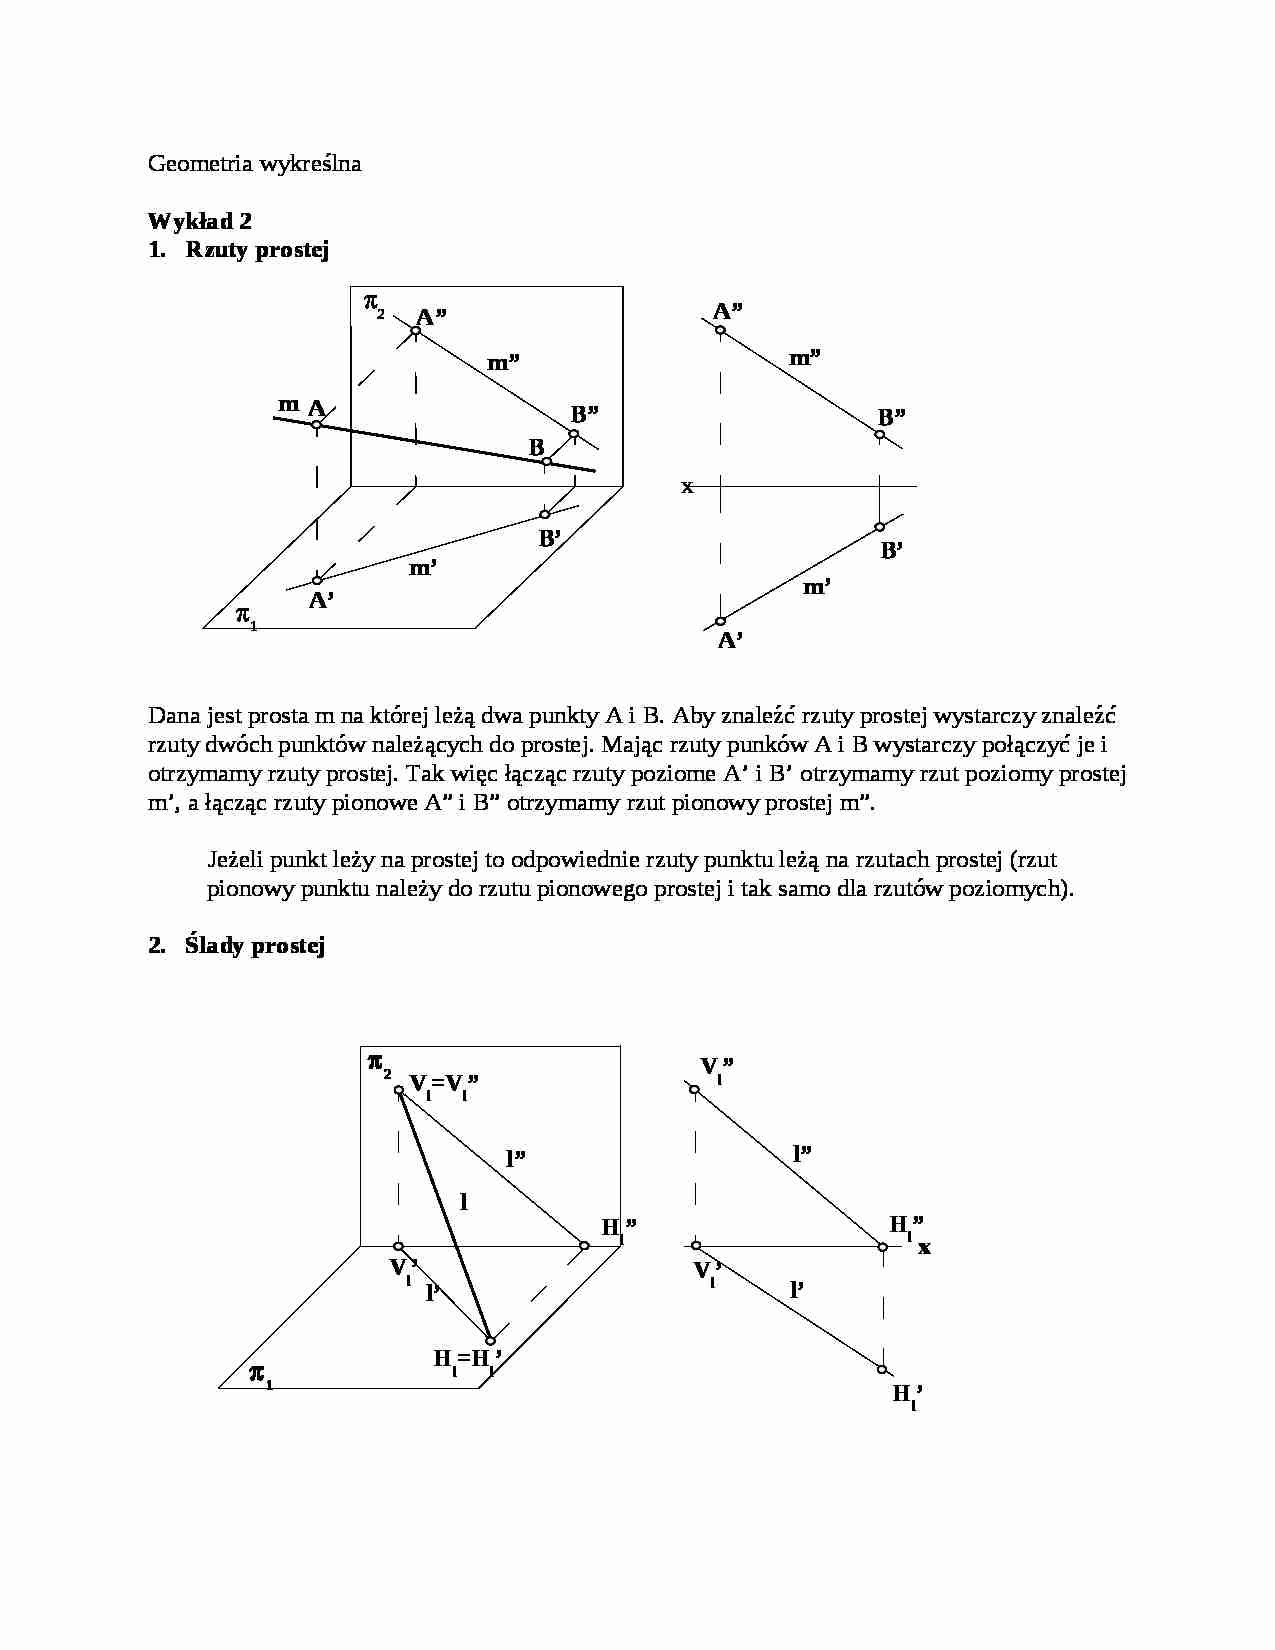 Geometria wykreślna - Wykład 2 - strona 1